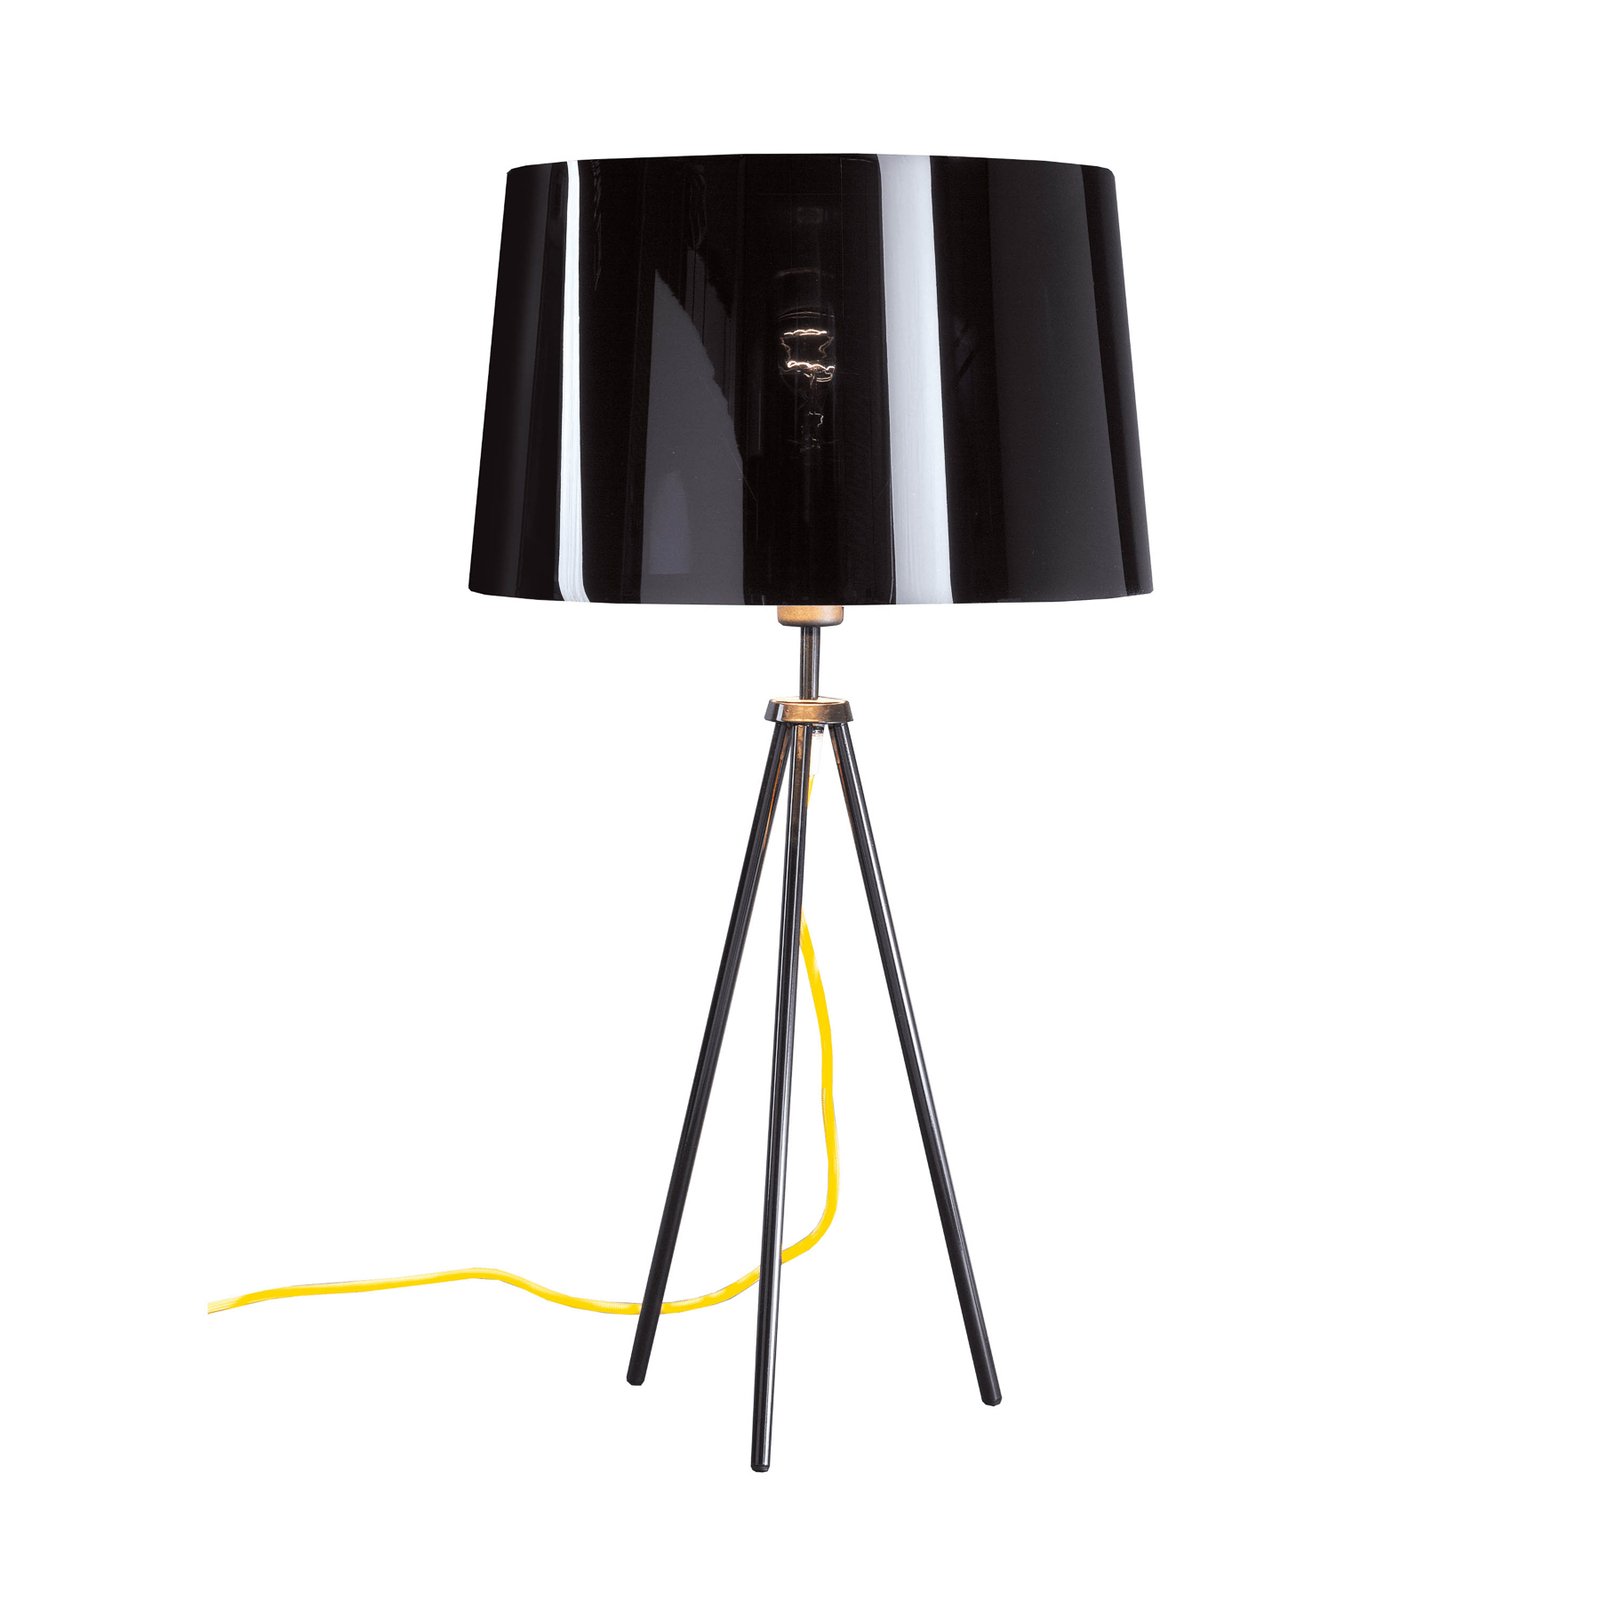 Aluminor Tropic bordslampa svart, kabel gul